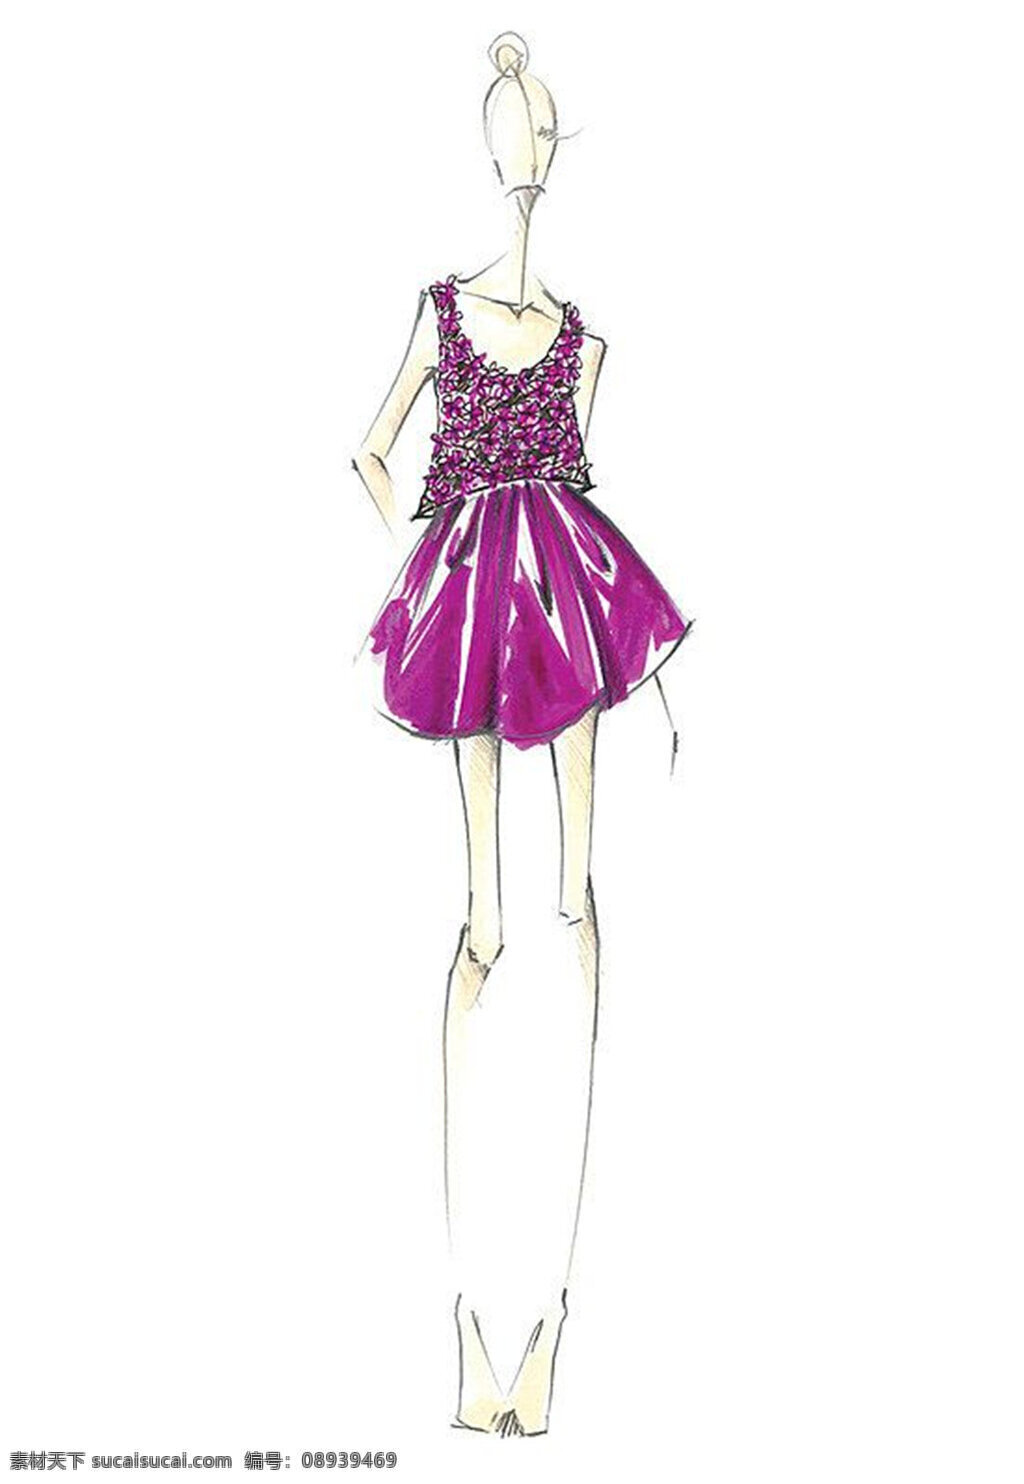 紫色 无袖 连衣裙 设计图 服装设计 时尚女装 职业女装 职业装 女装设计 效果图 短裙 衬衫 服装 服装效果图